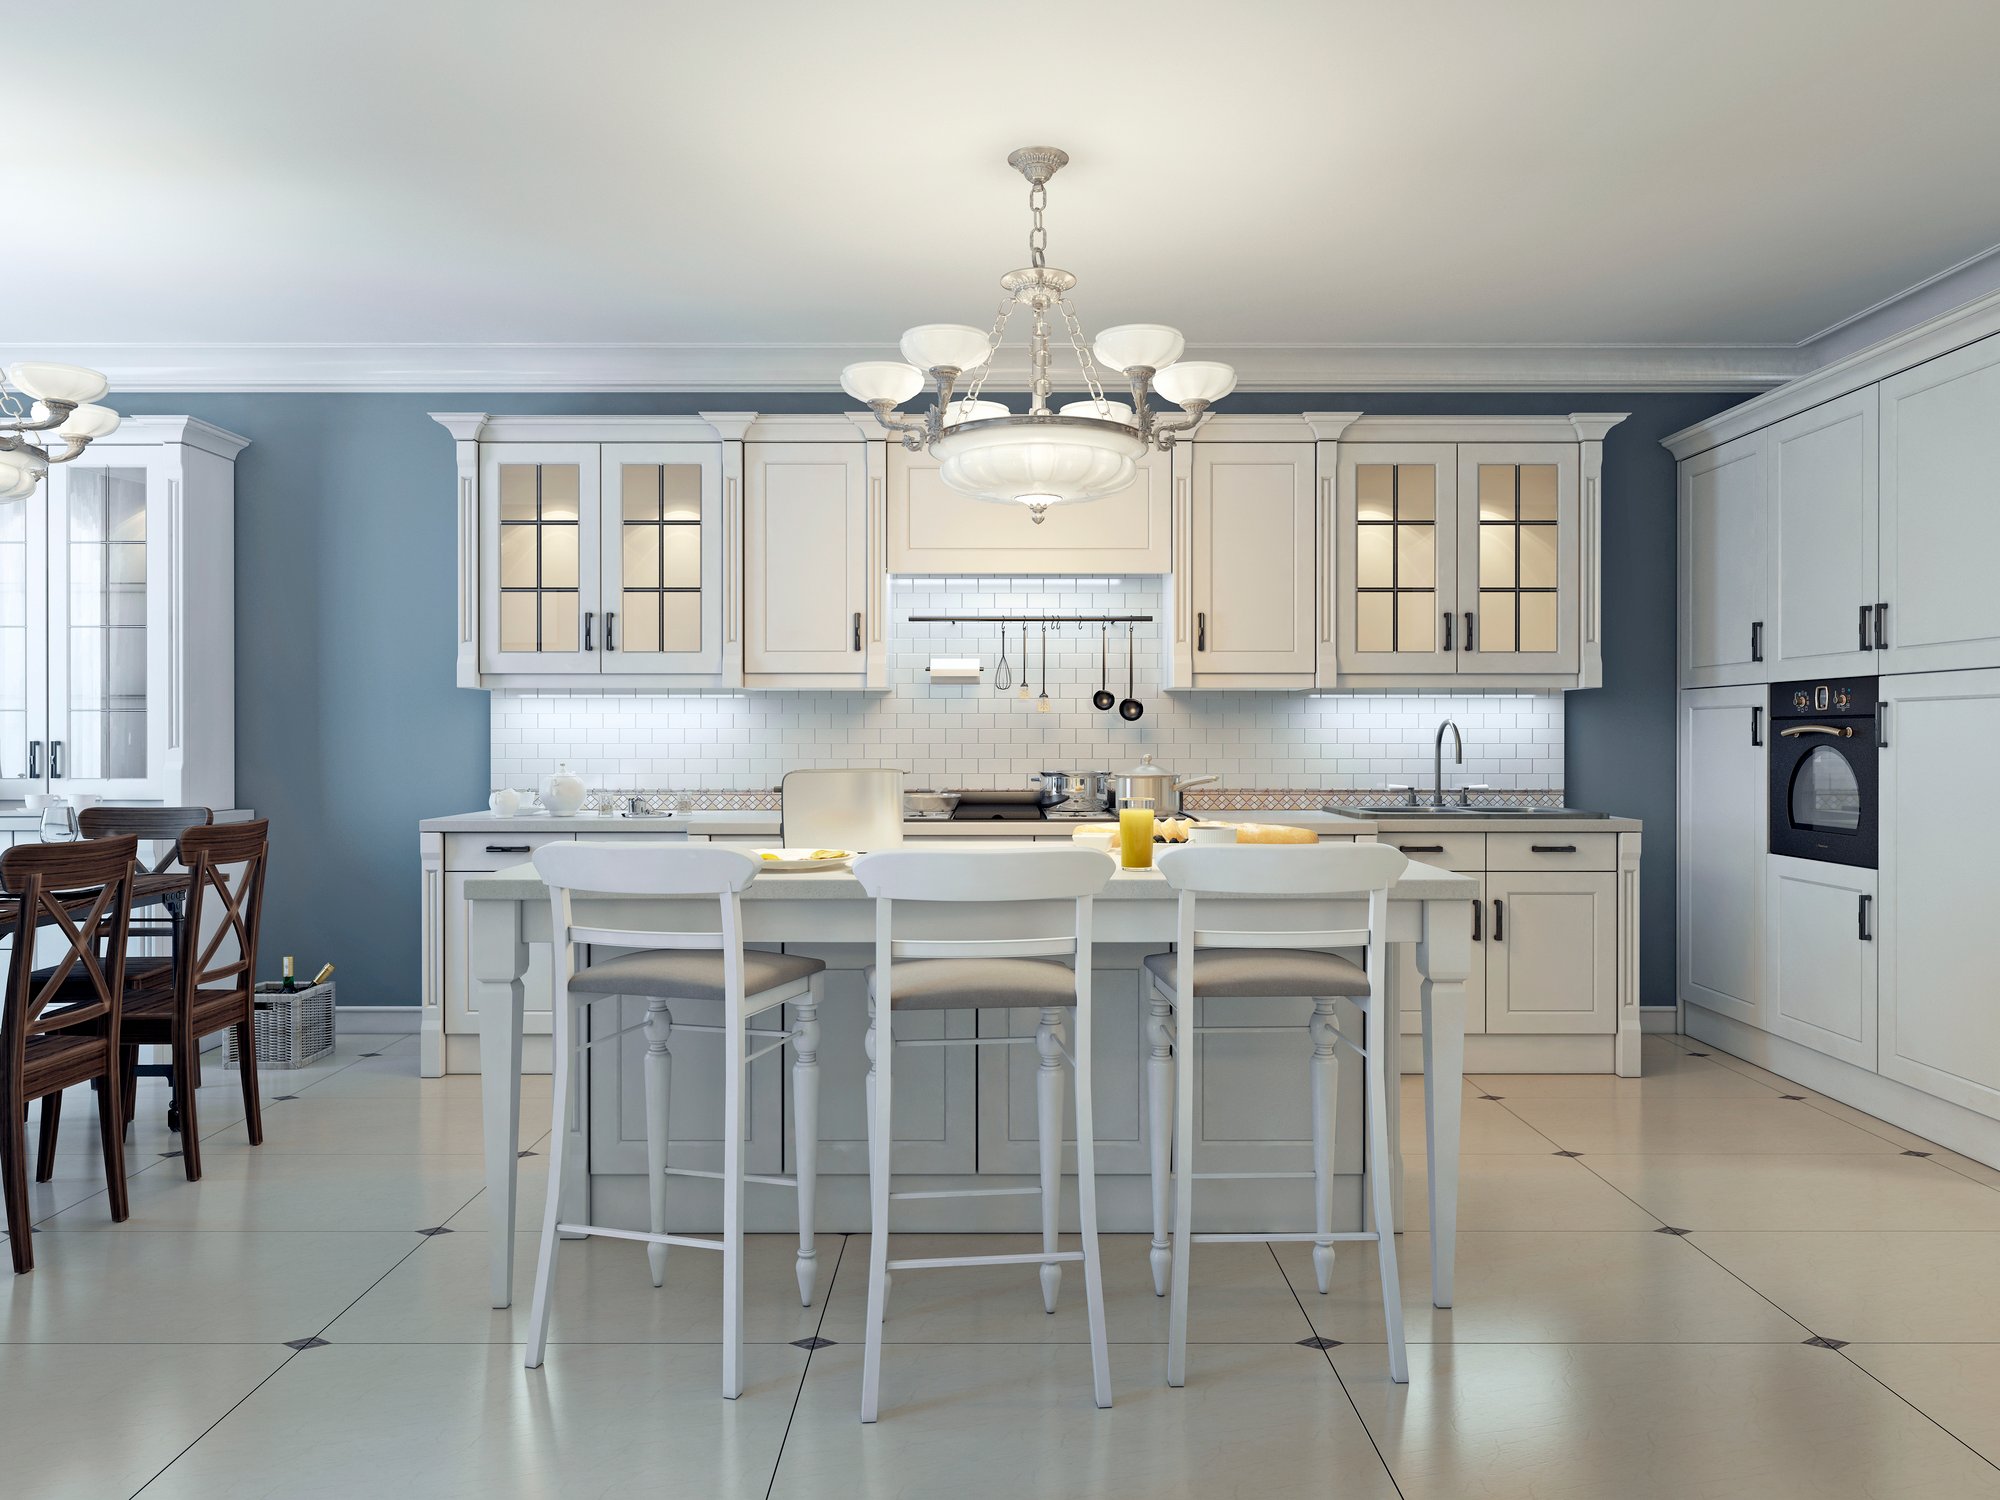 Unique White Kitchen Cabinets Vs Color for Small Space